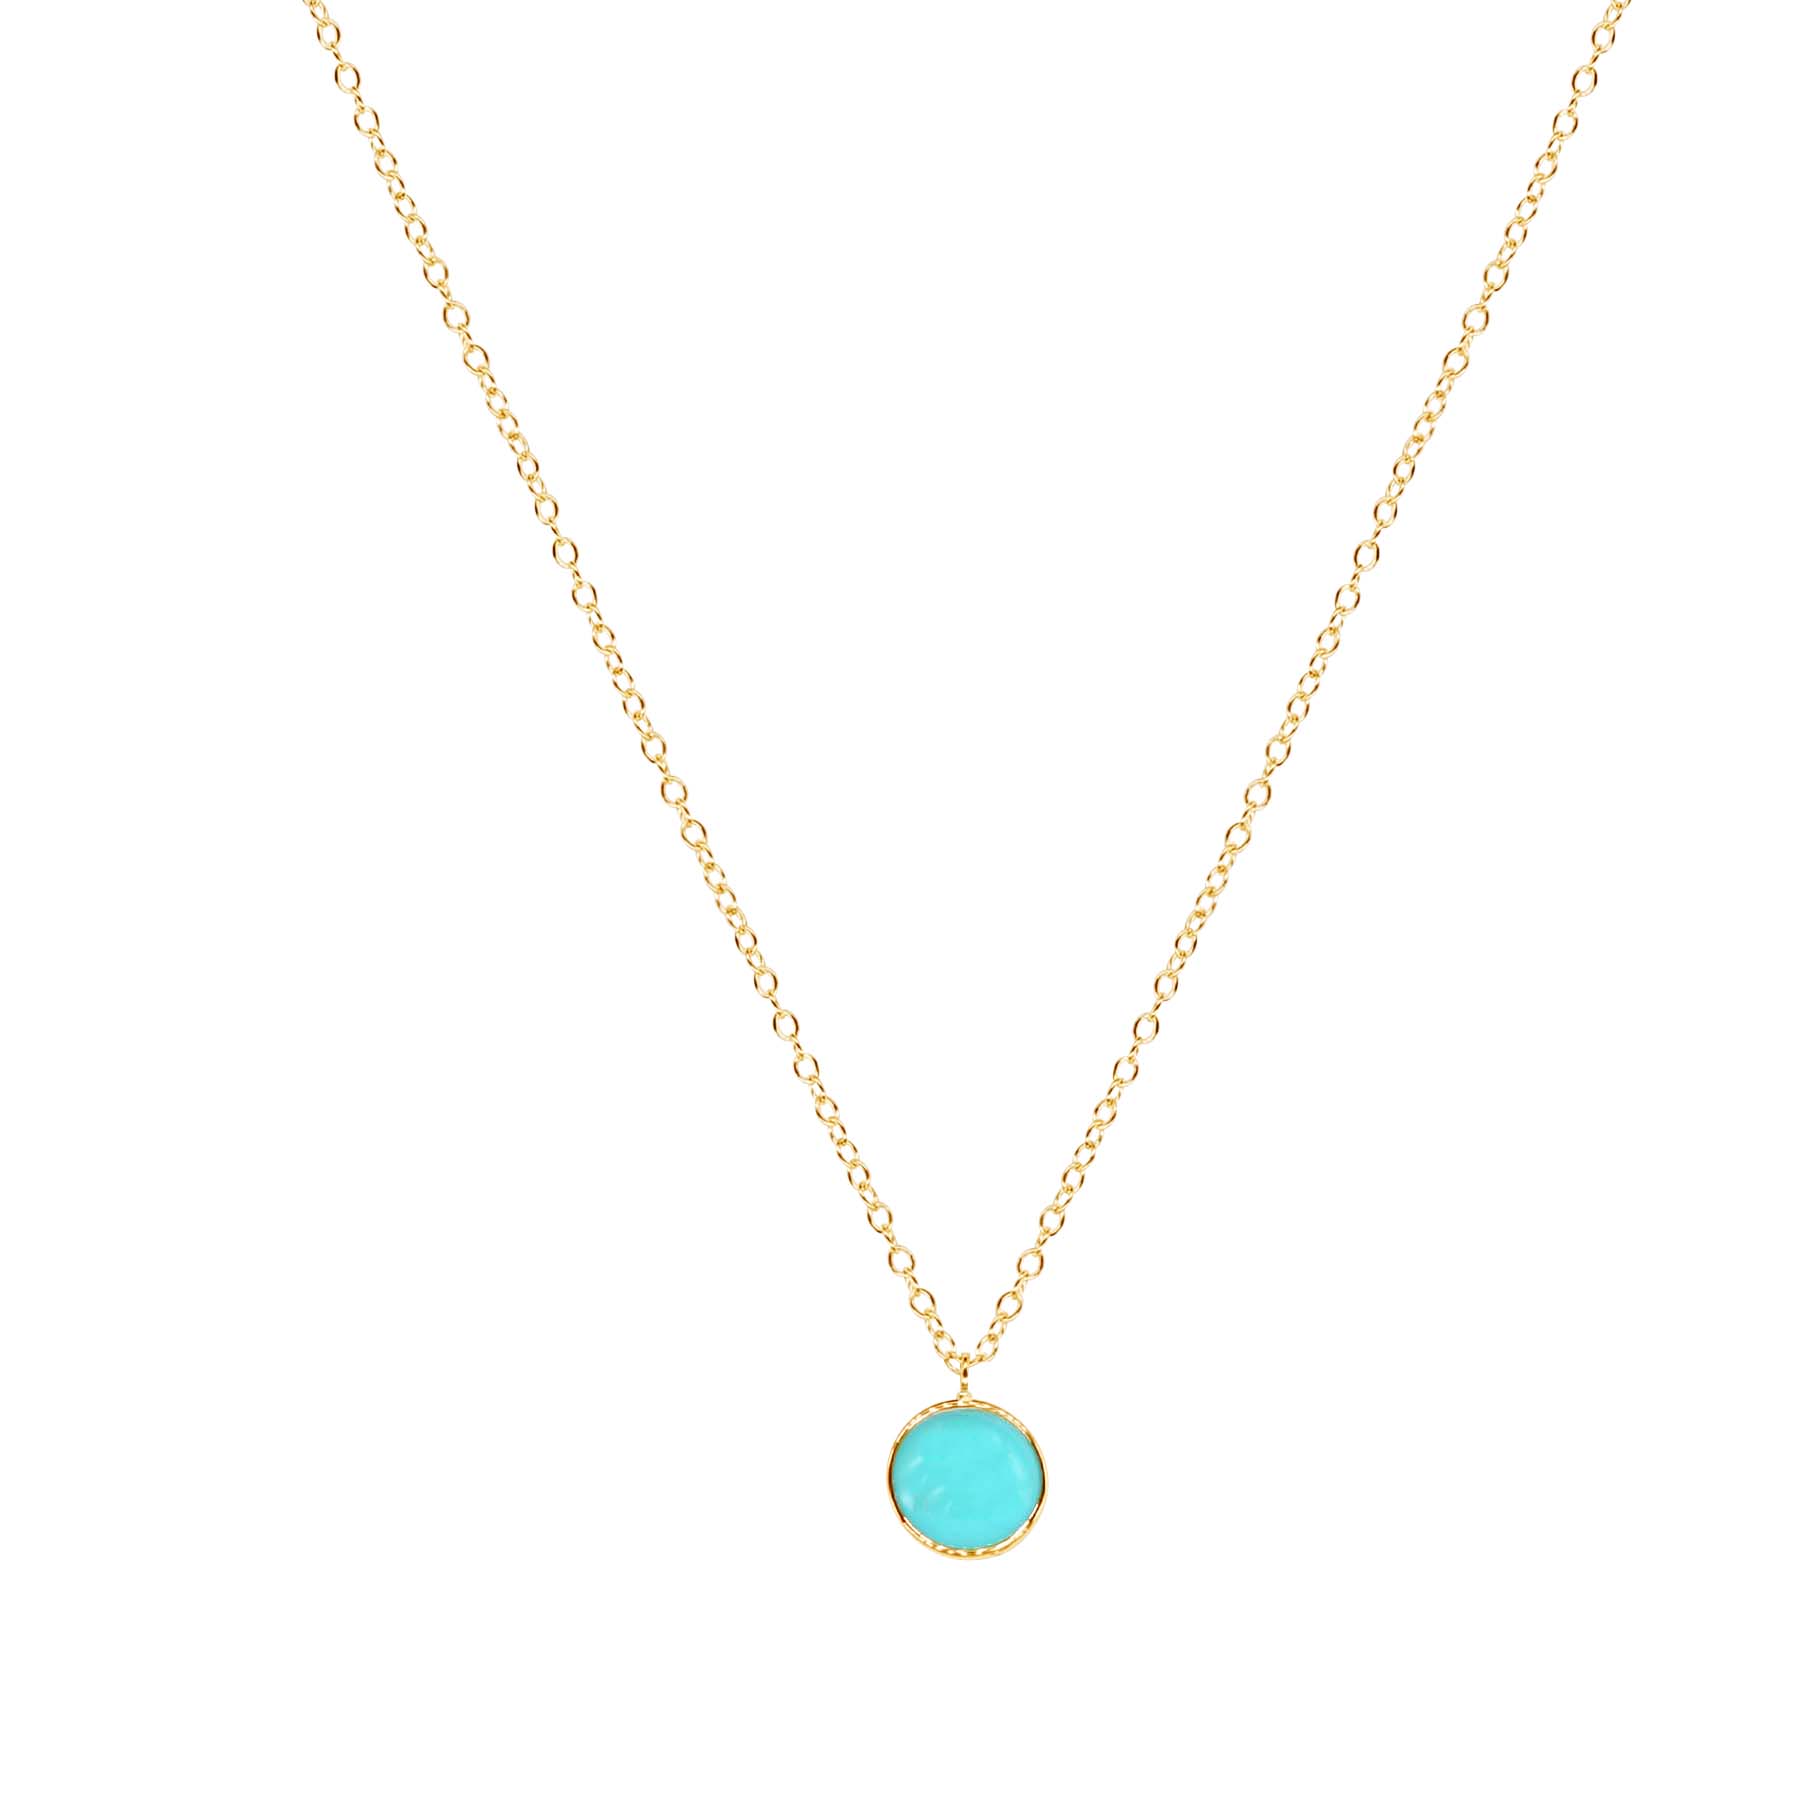 14k Turquoise Round Bezel Pendant Necklace 17" freeshipping - Jewelmak Shop